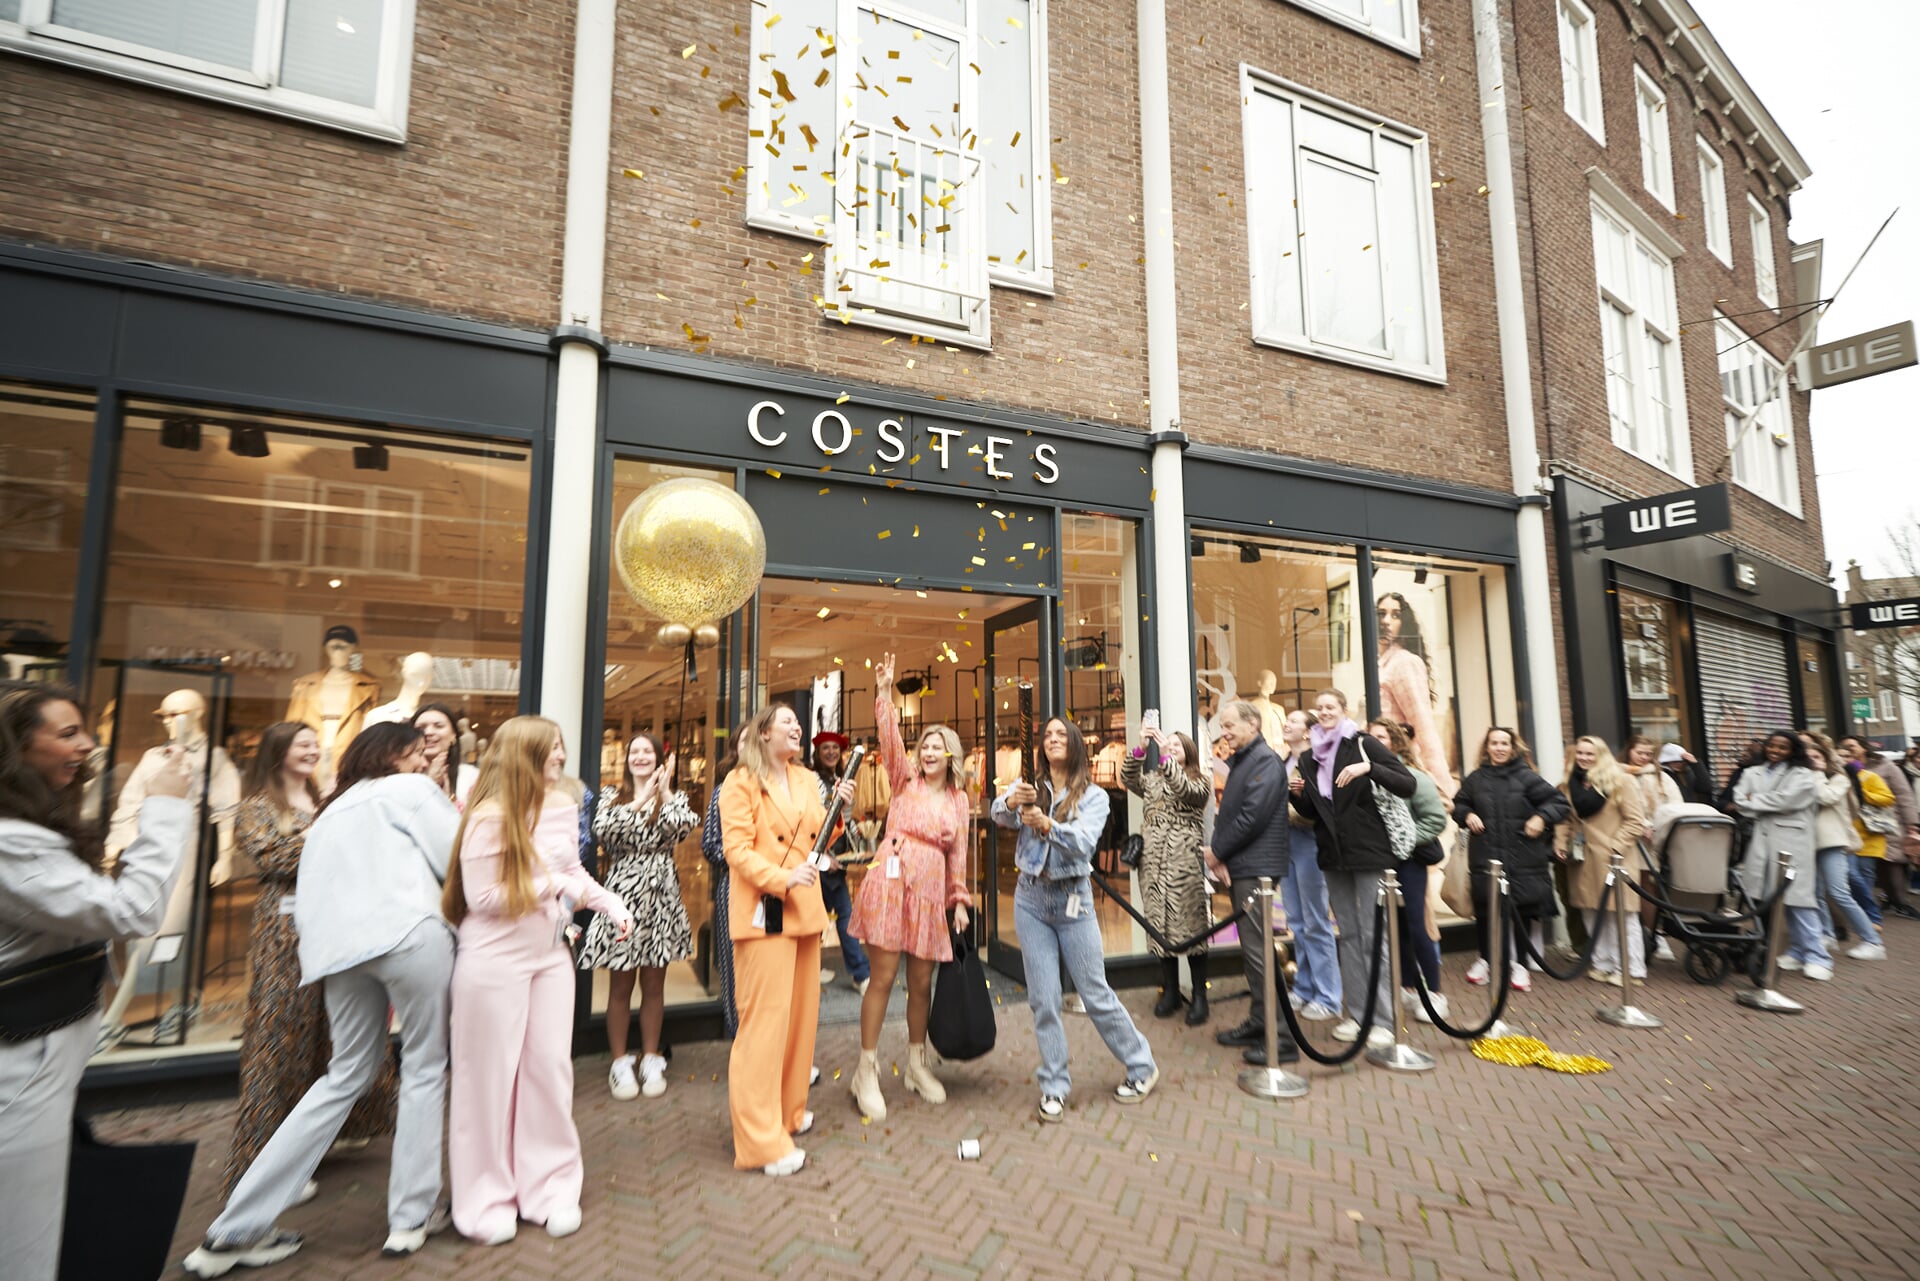 De opening van de nieuwe winkel van Costes in de Lange Delft in Middelburg